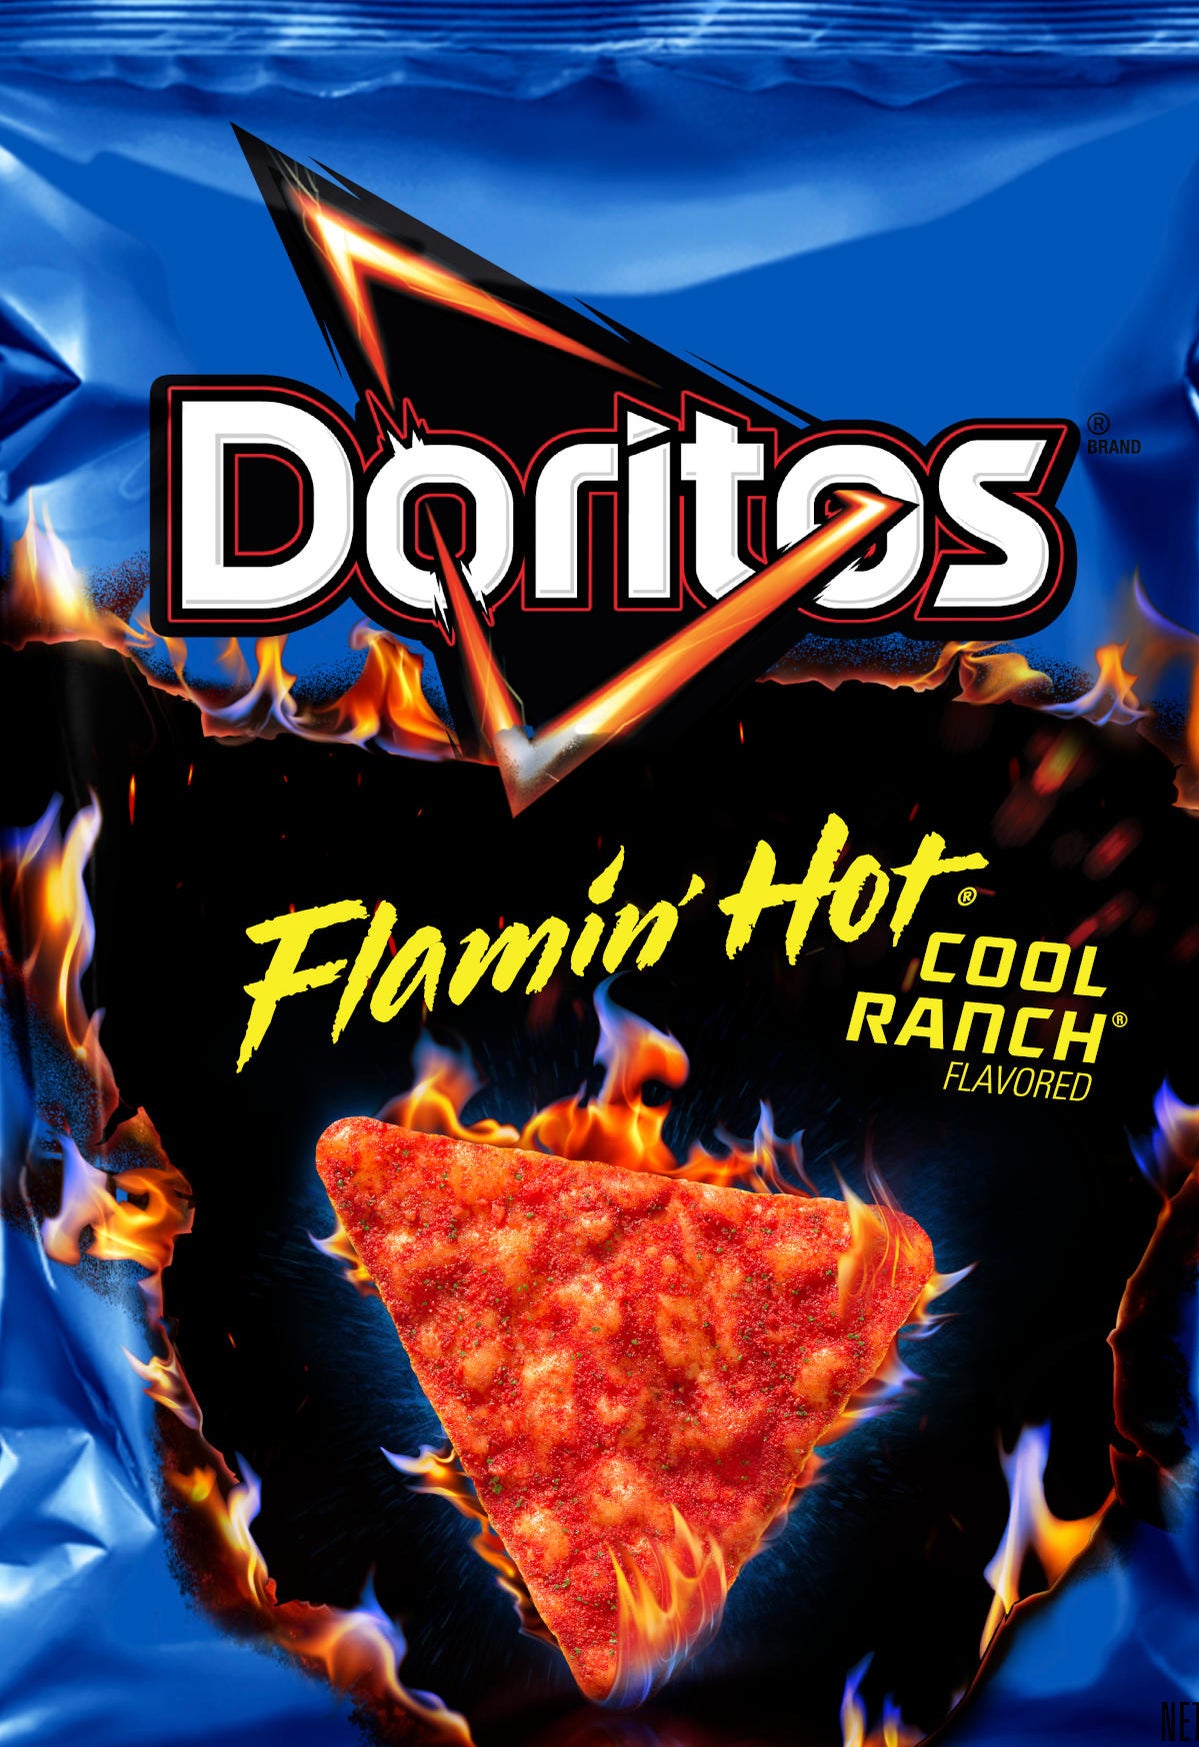 doritos-flamion-hot-cool-ranch-flavor-announced.jpg